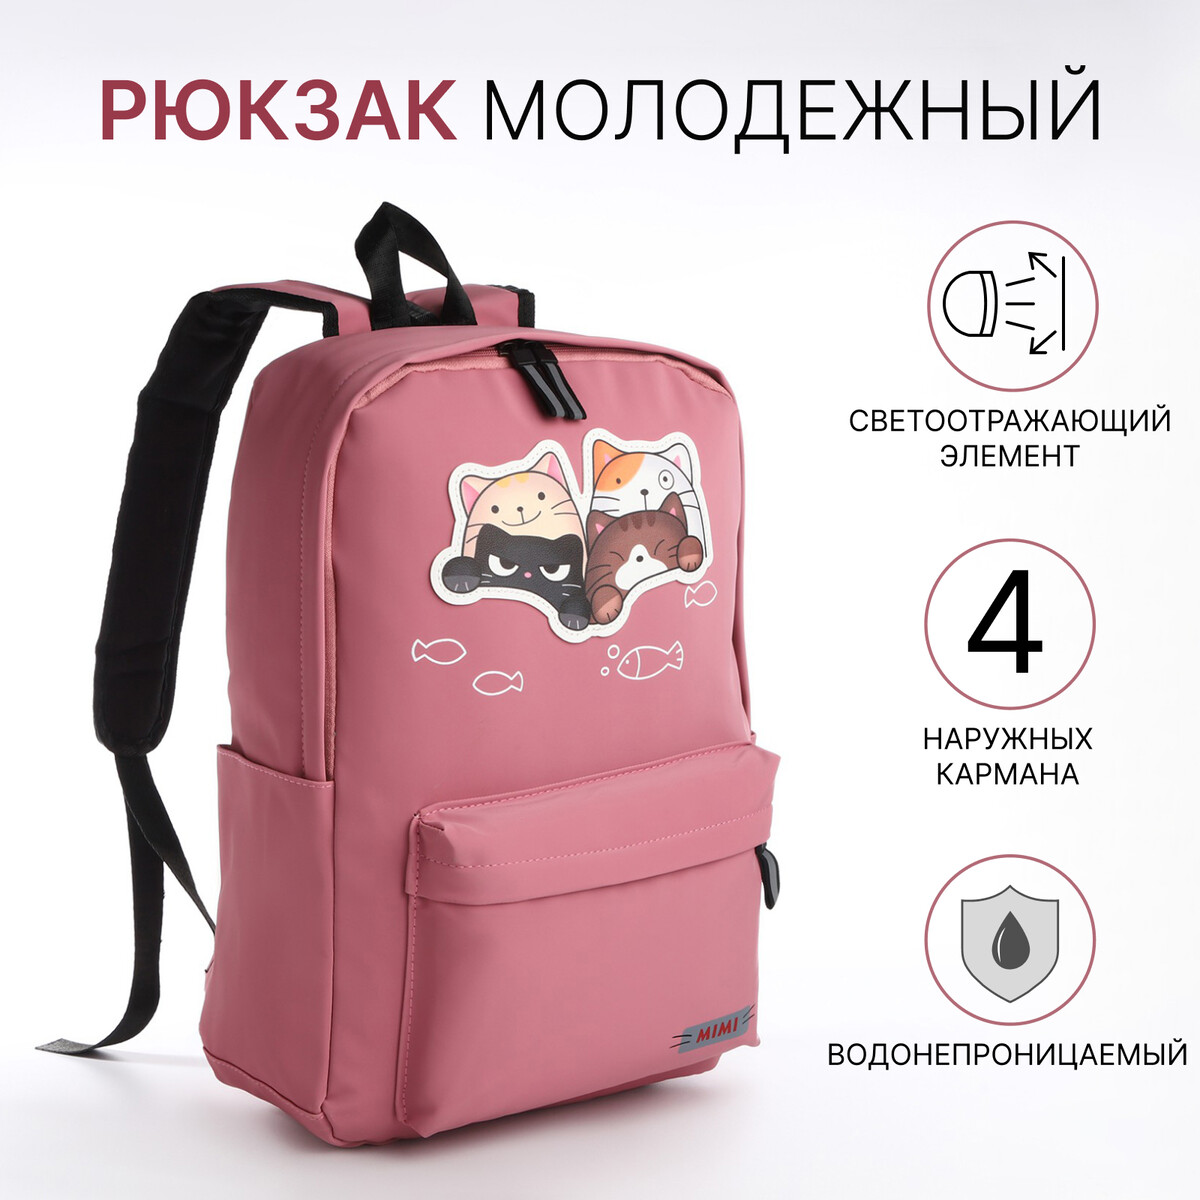 Рюкзак молодежный из текстиля на молнии, 4 кармана, цвет розовый рюкзак молодежный из текстиля 3 кармана розовый